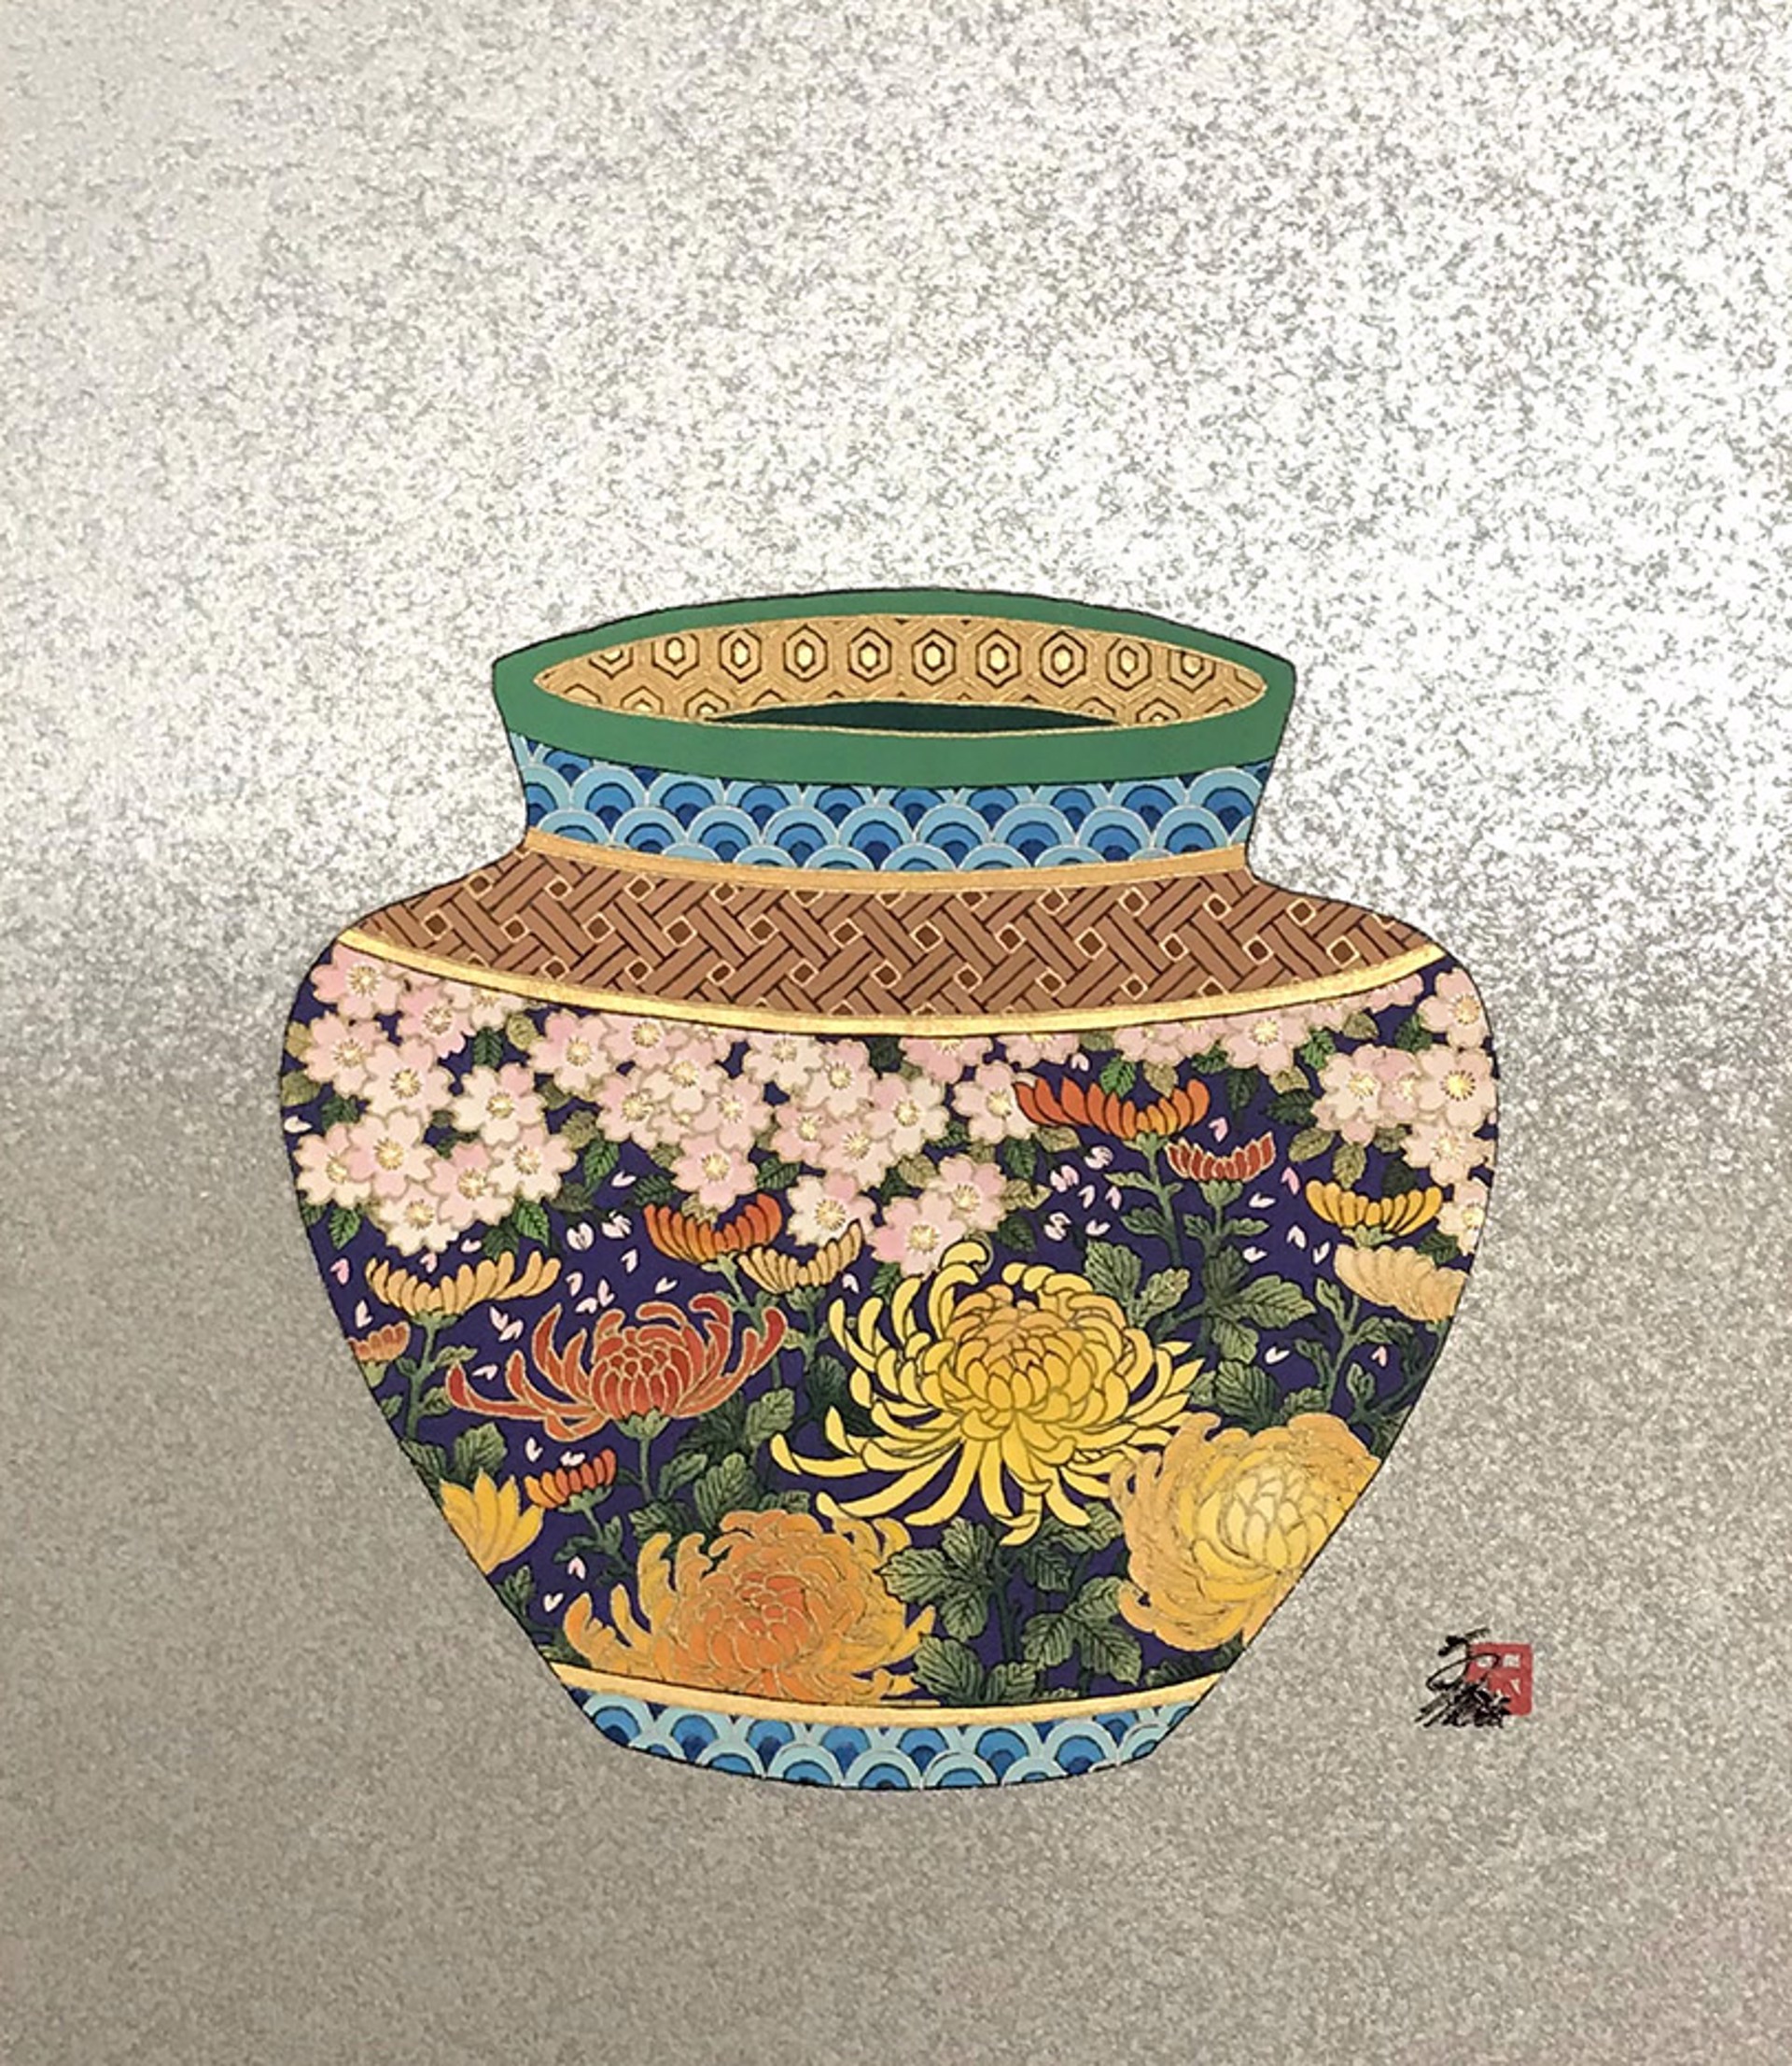 Fantasy Of Vase 7 by Hisashi Otsuka